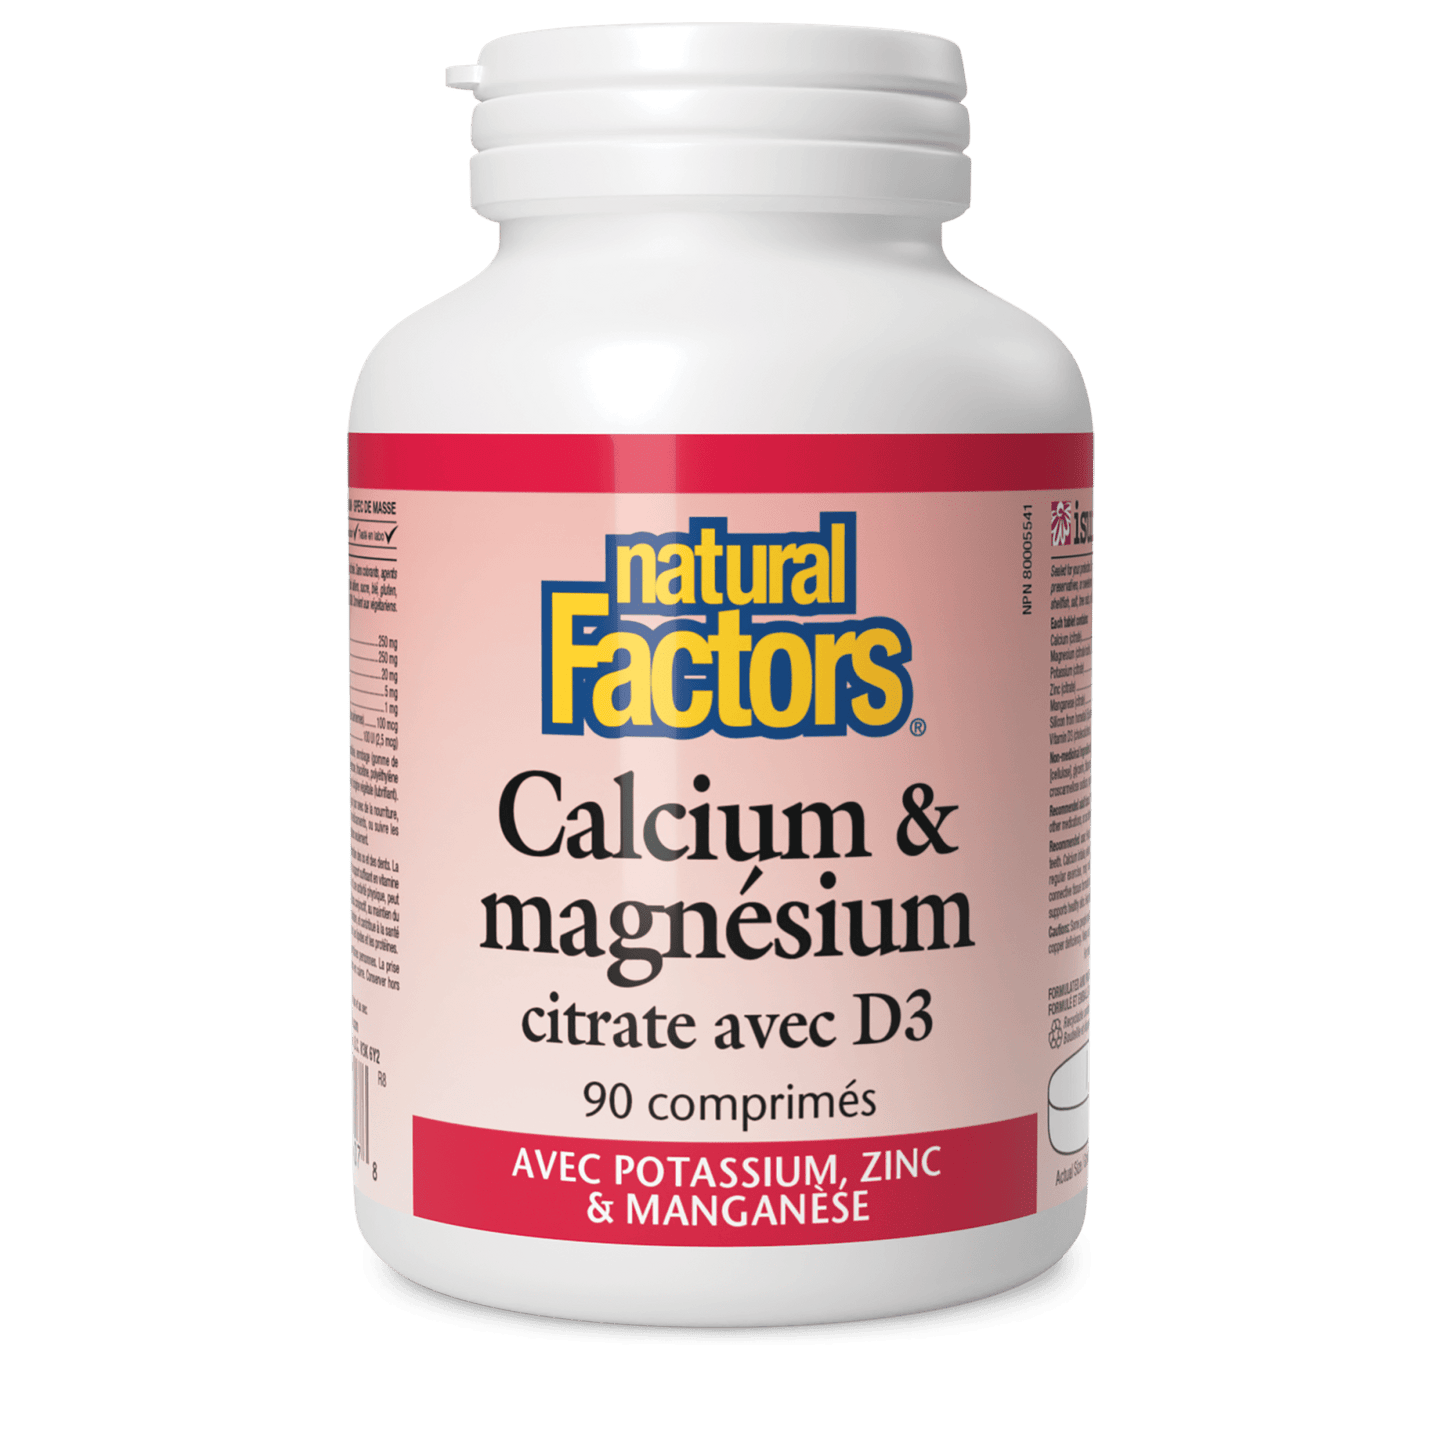 Calcium & magnésium citrate avec D3 avec potassium, zinc & manganèse, Natural Factors|v|image|1607